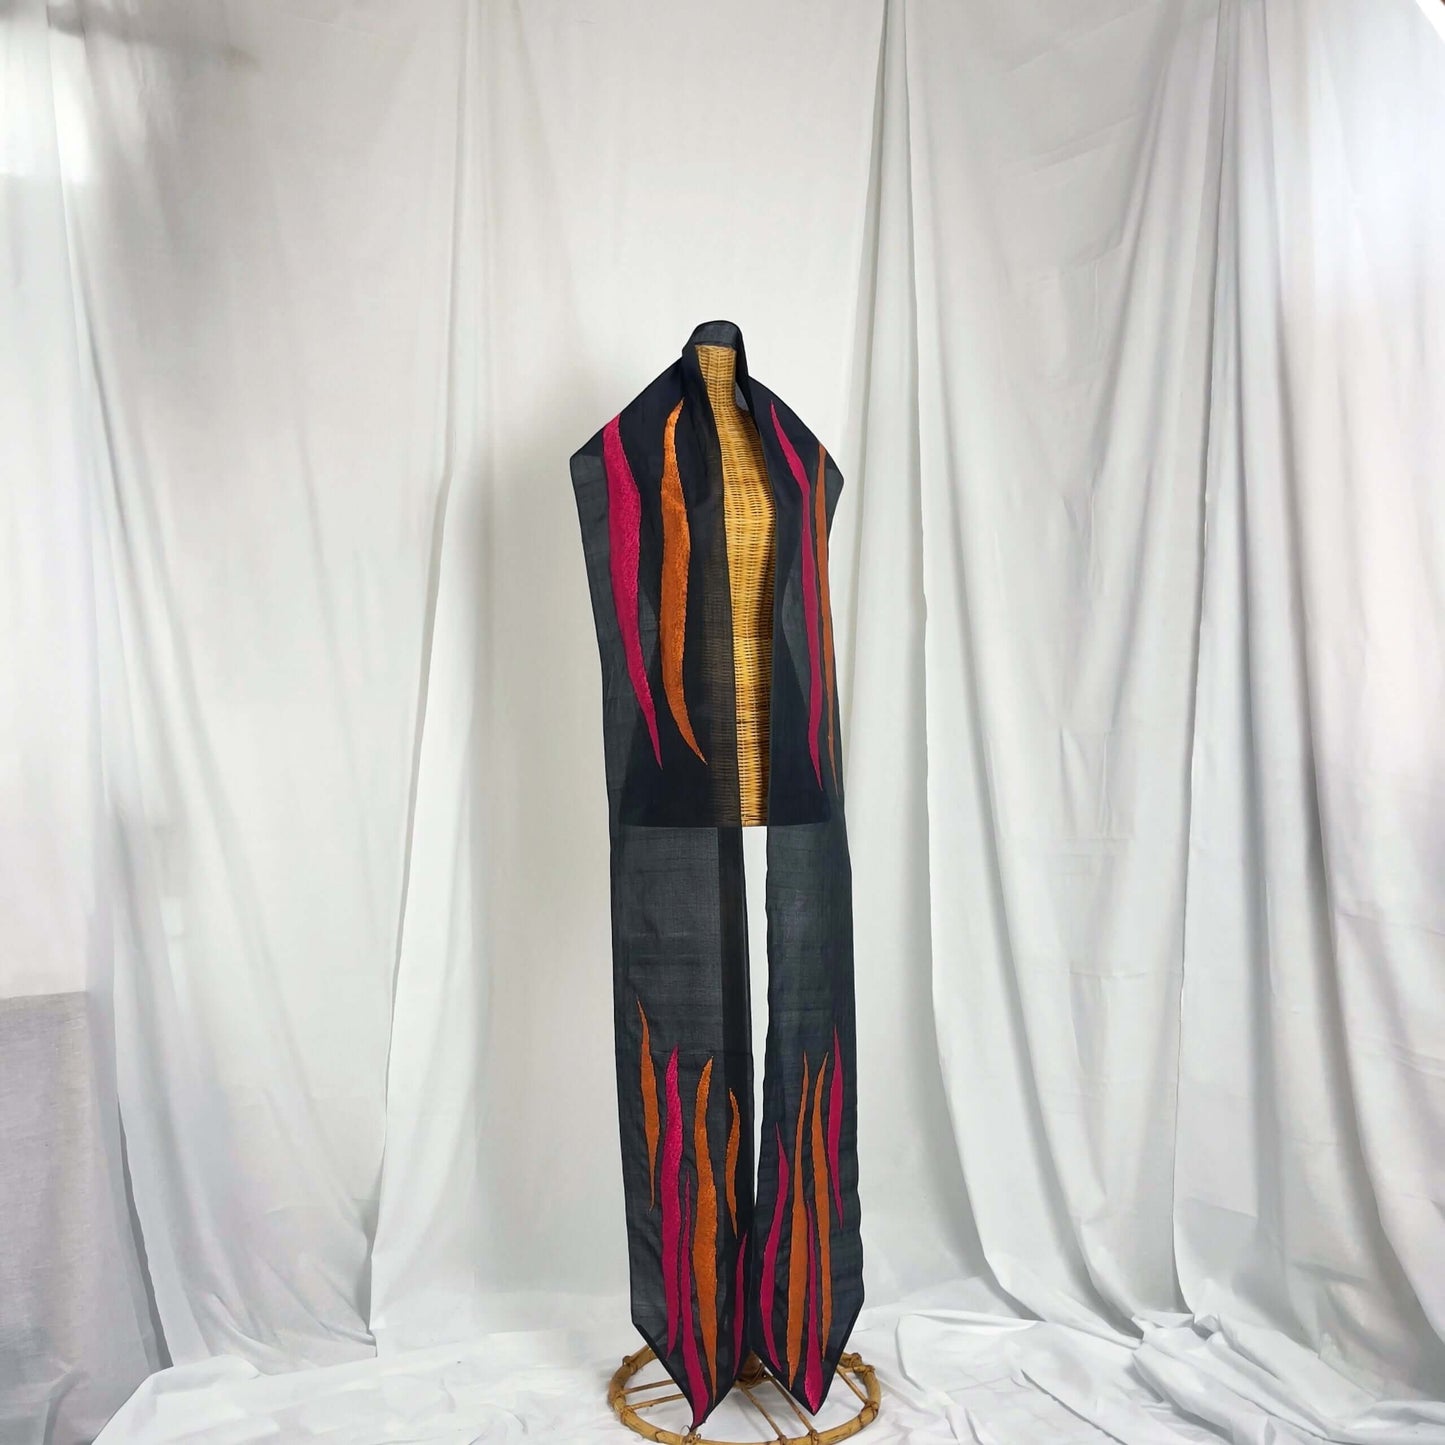 Selampai Jambu handwoven silk songket shawl textile